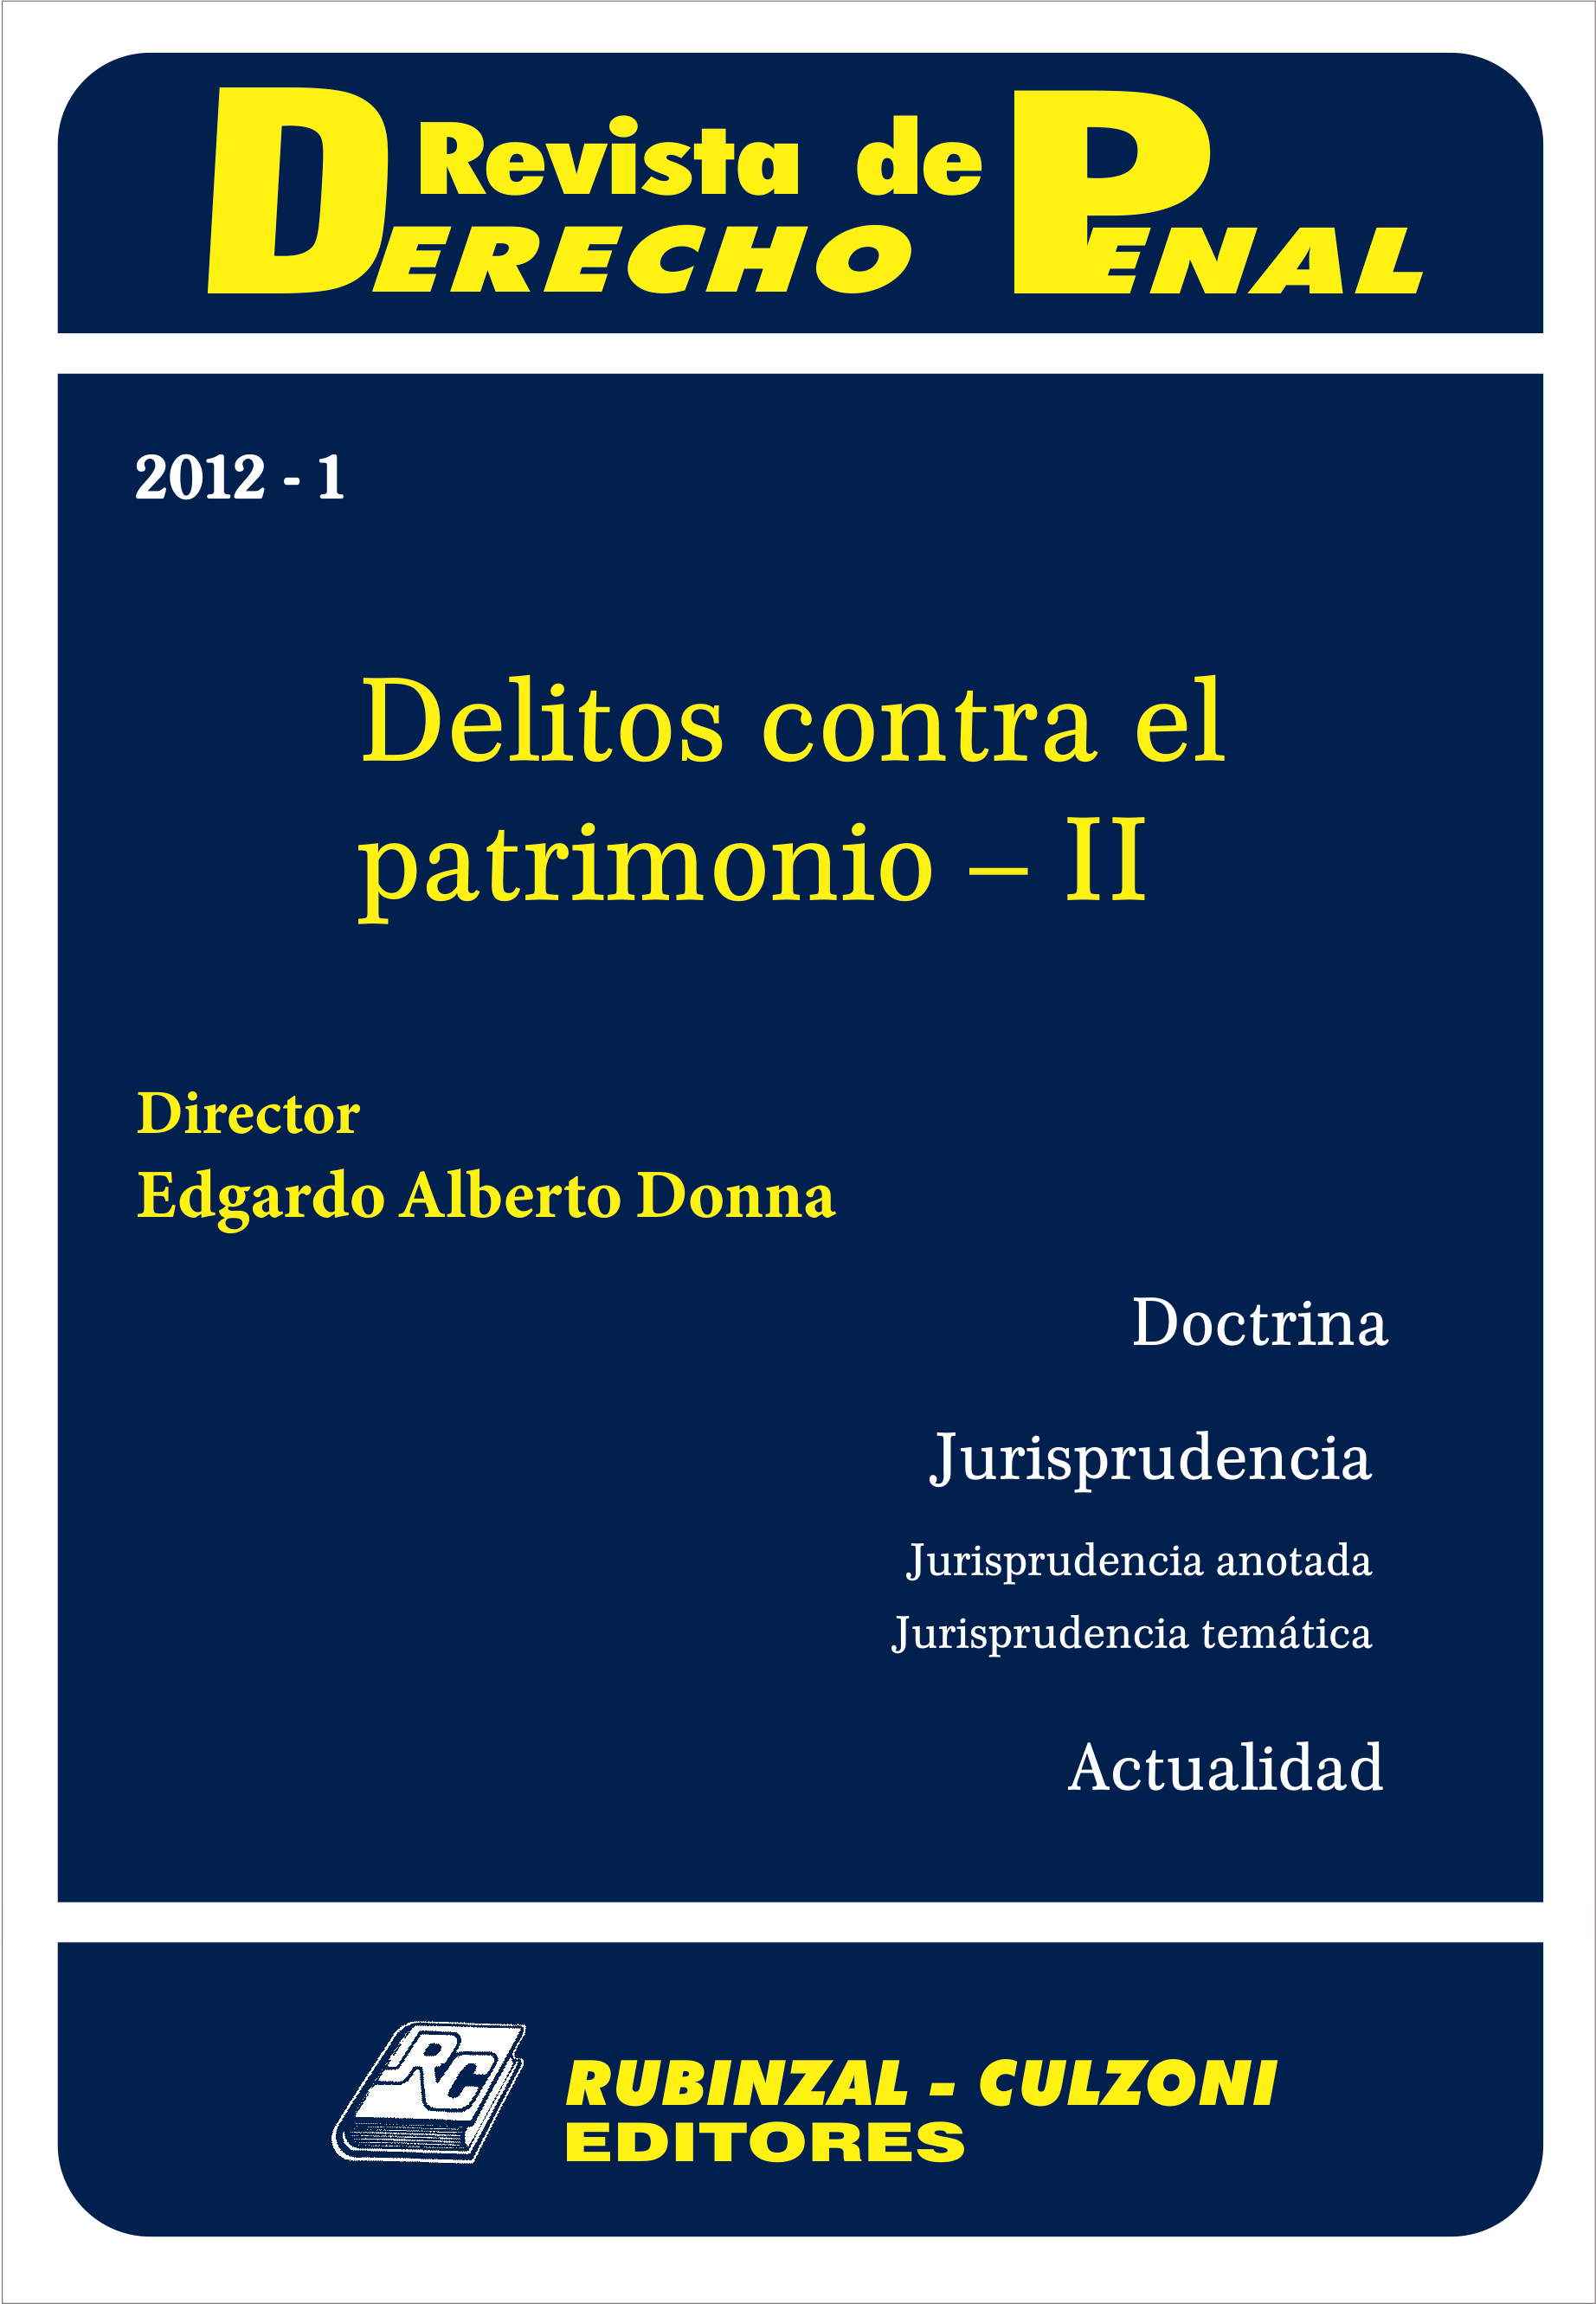 Revista de Derecho Penal - Delitos contra el patrimonio - II.